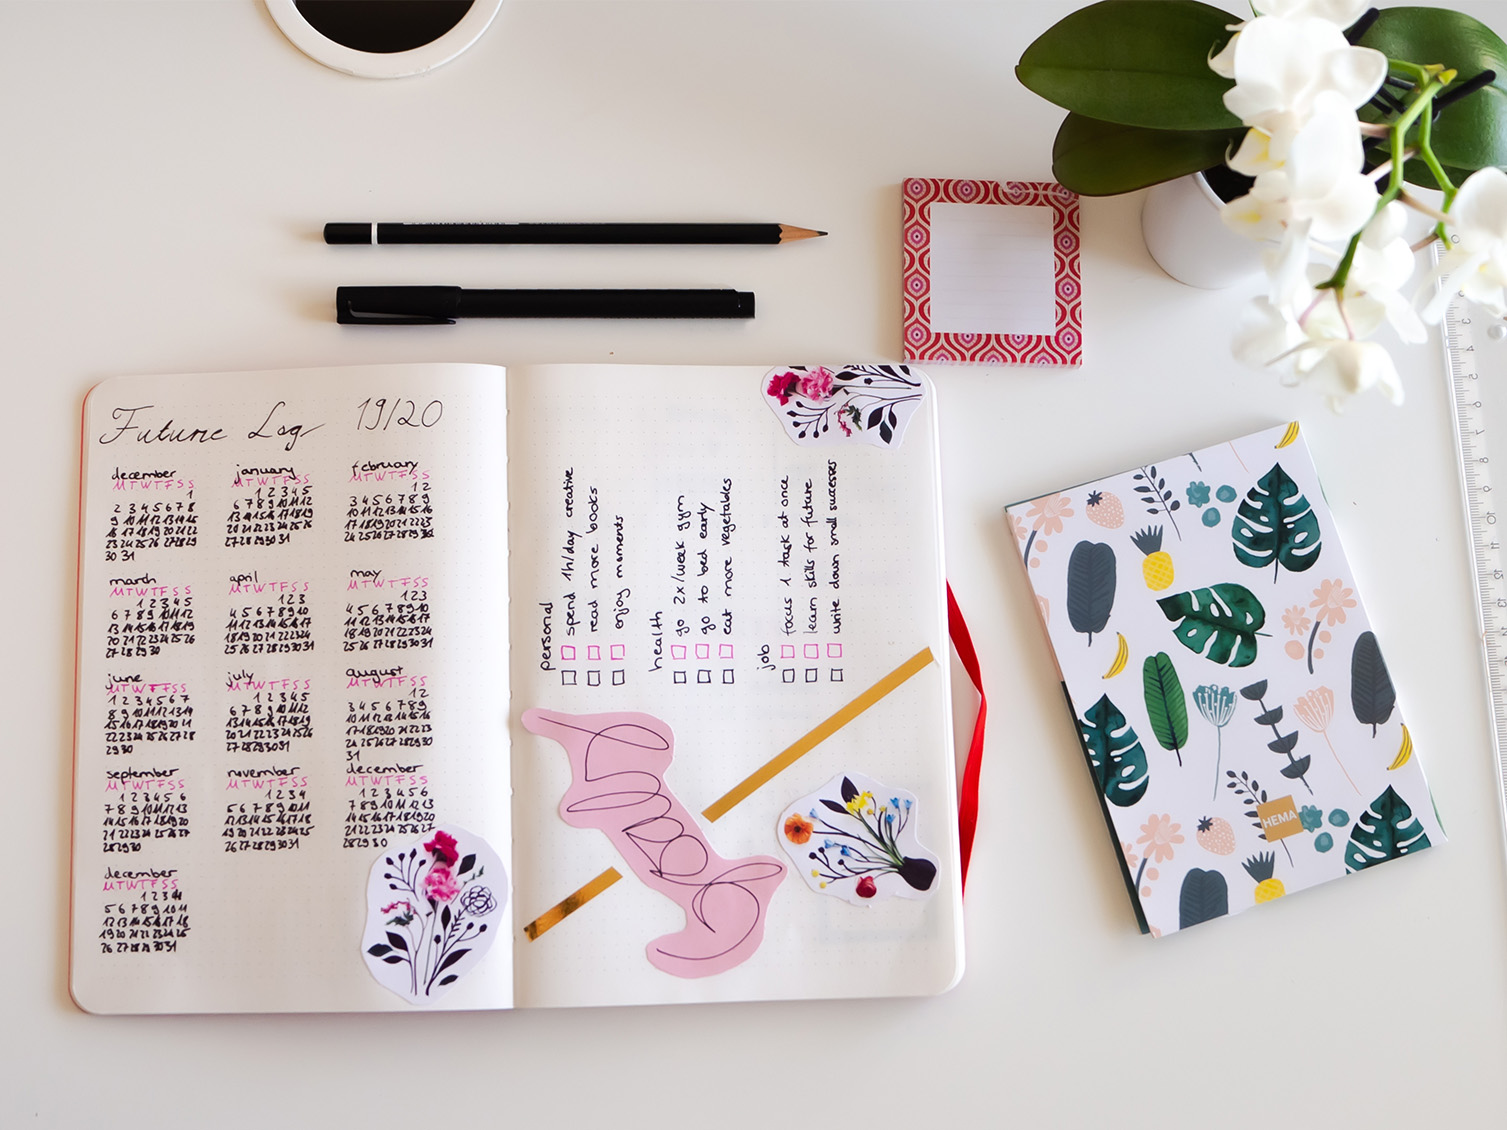 Journaling: cos'è, come si fa? Quali sono idee e set per il diario creativo?